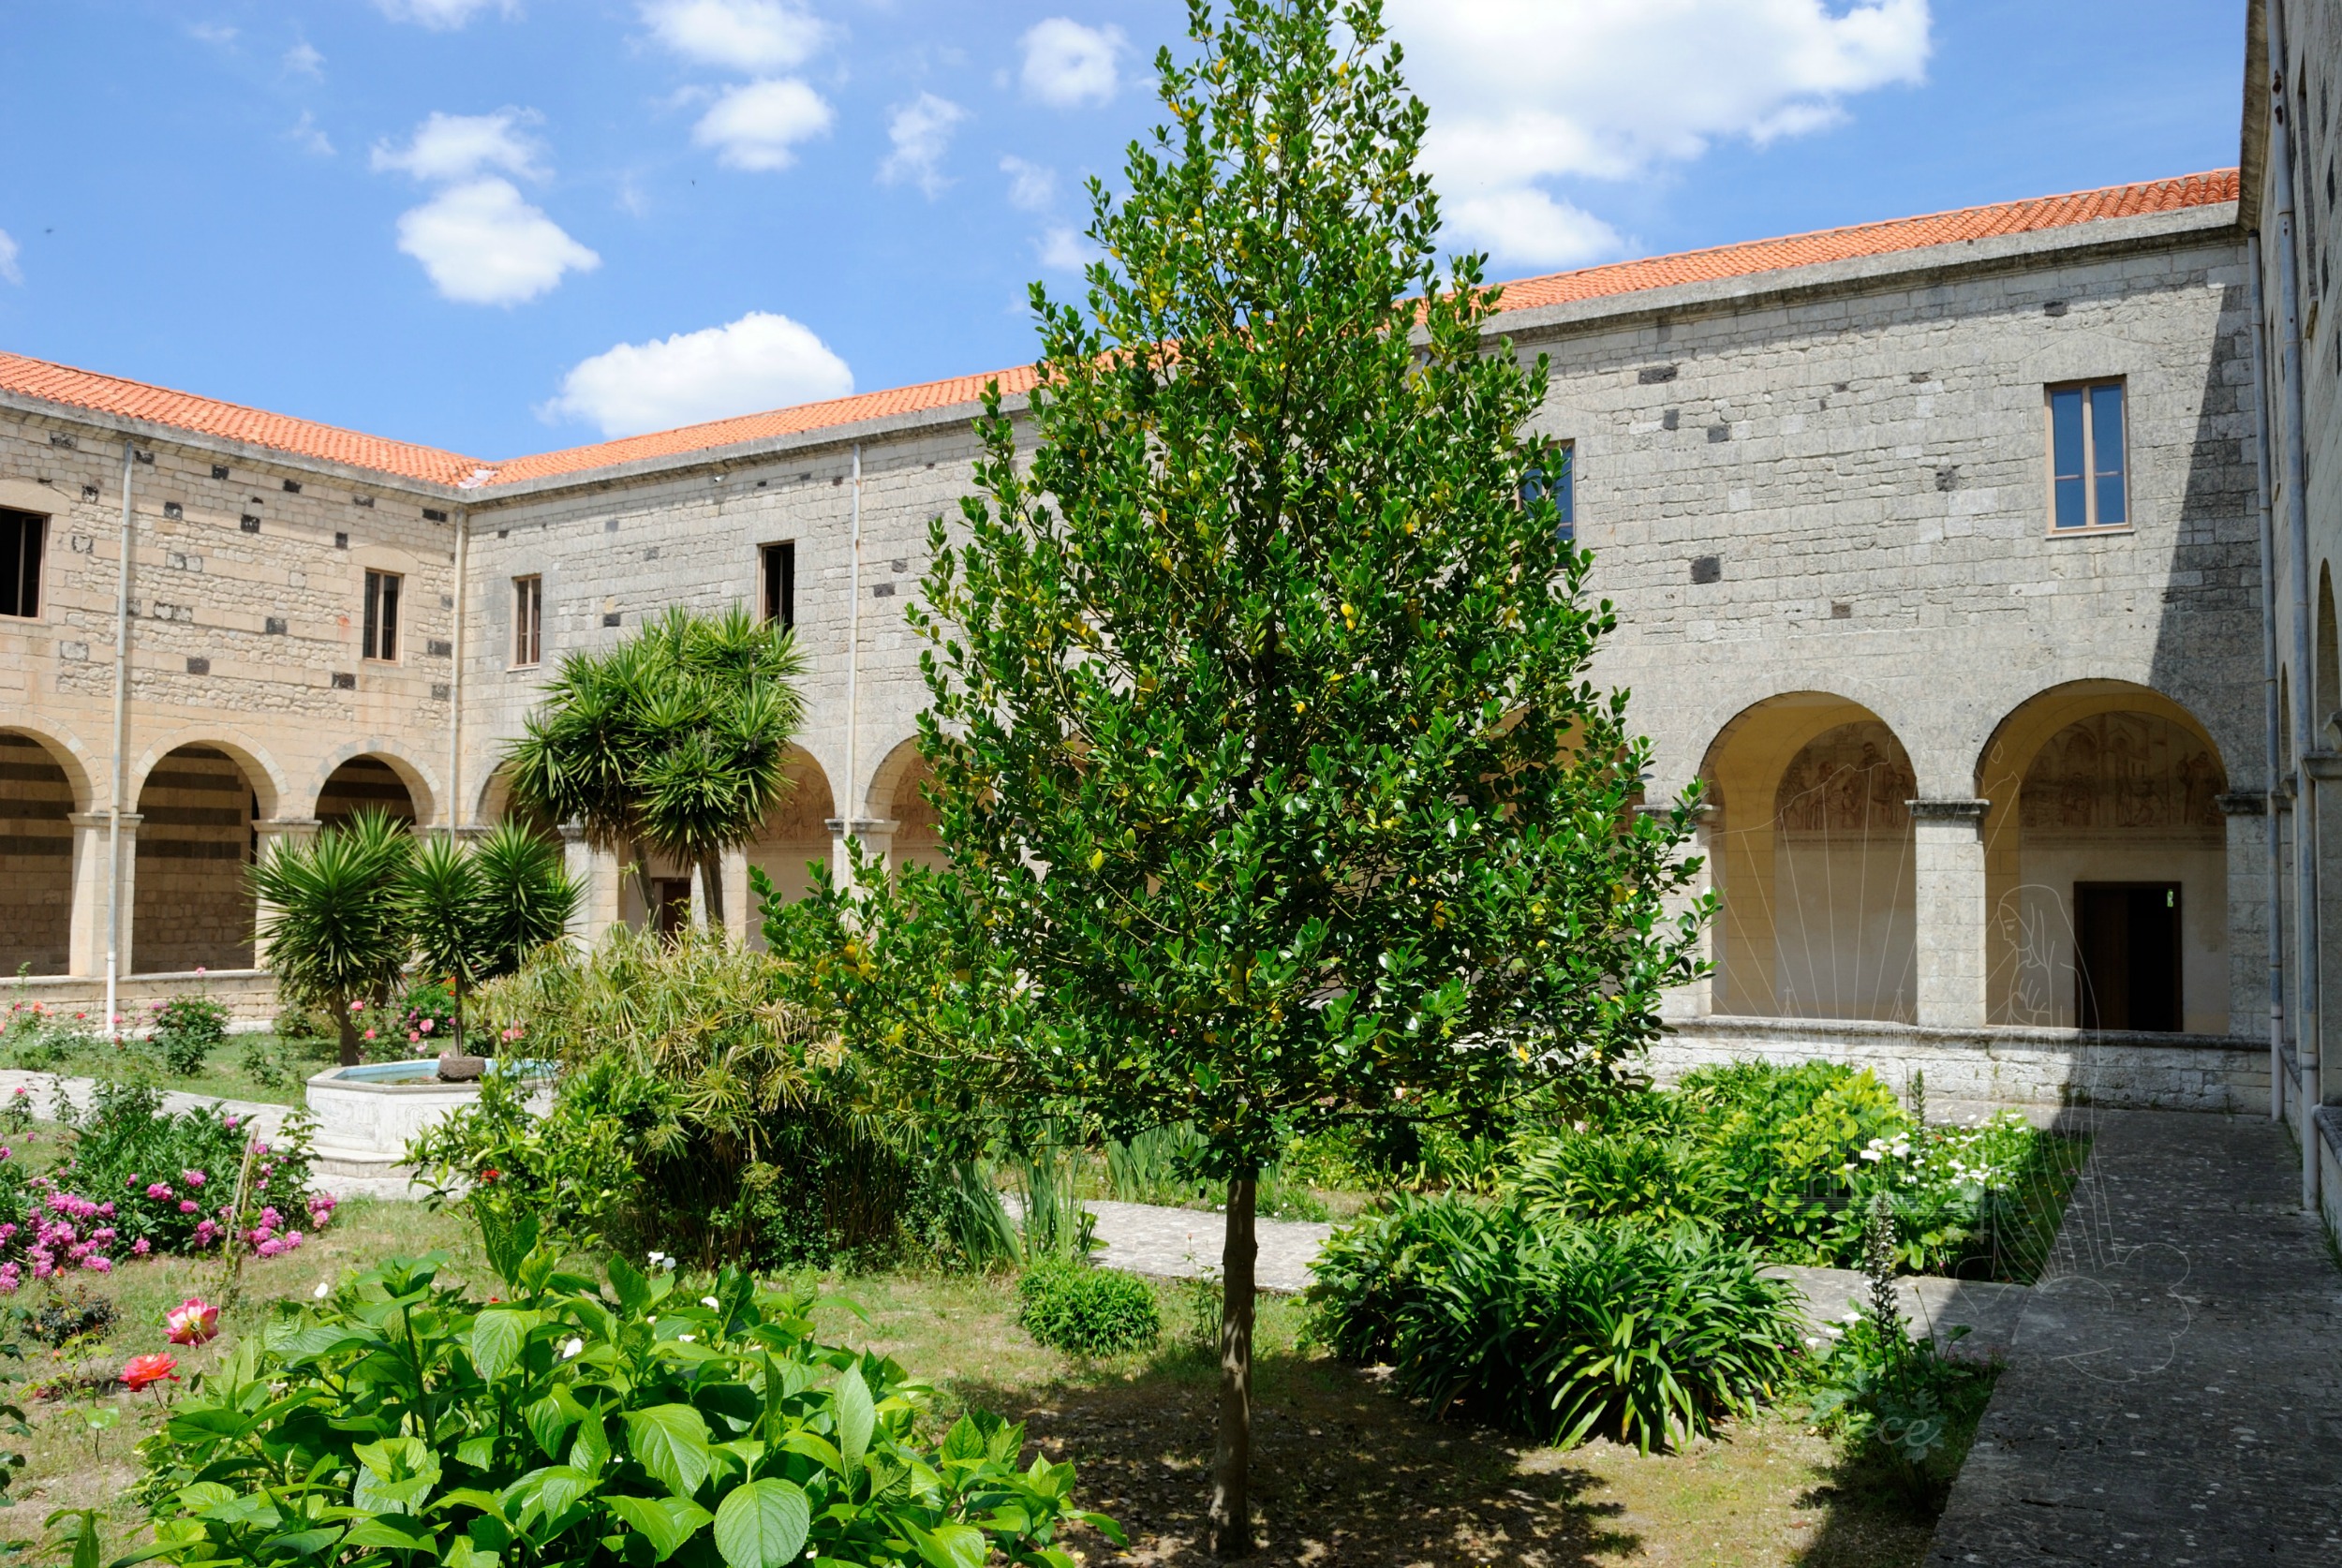 The Benedictine monastery of San Pietro di Sorres